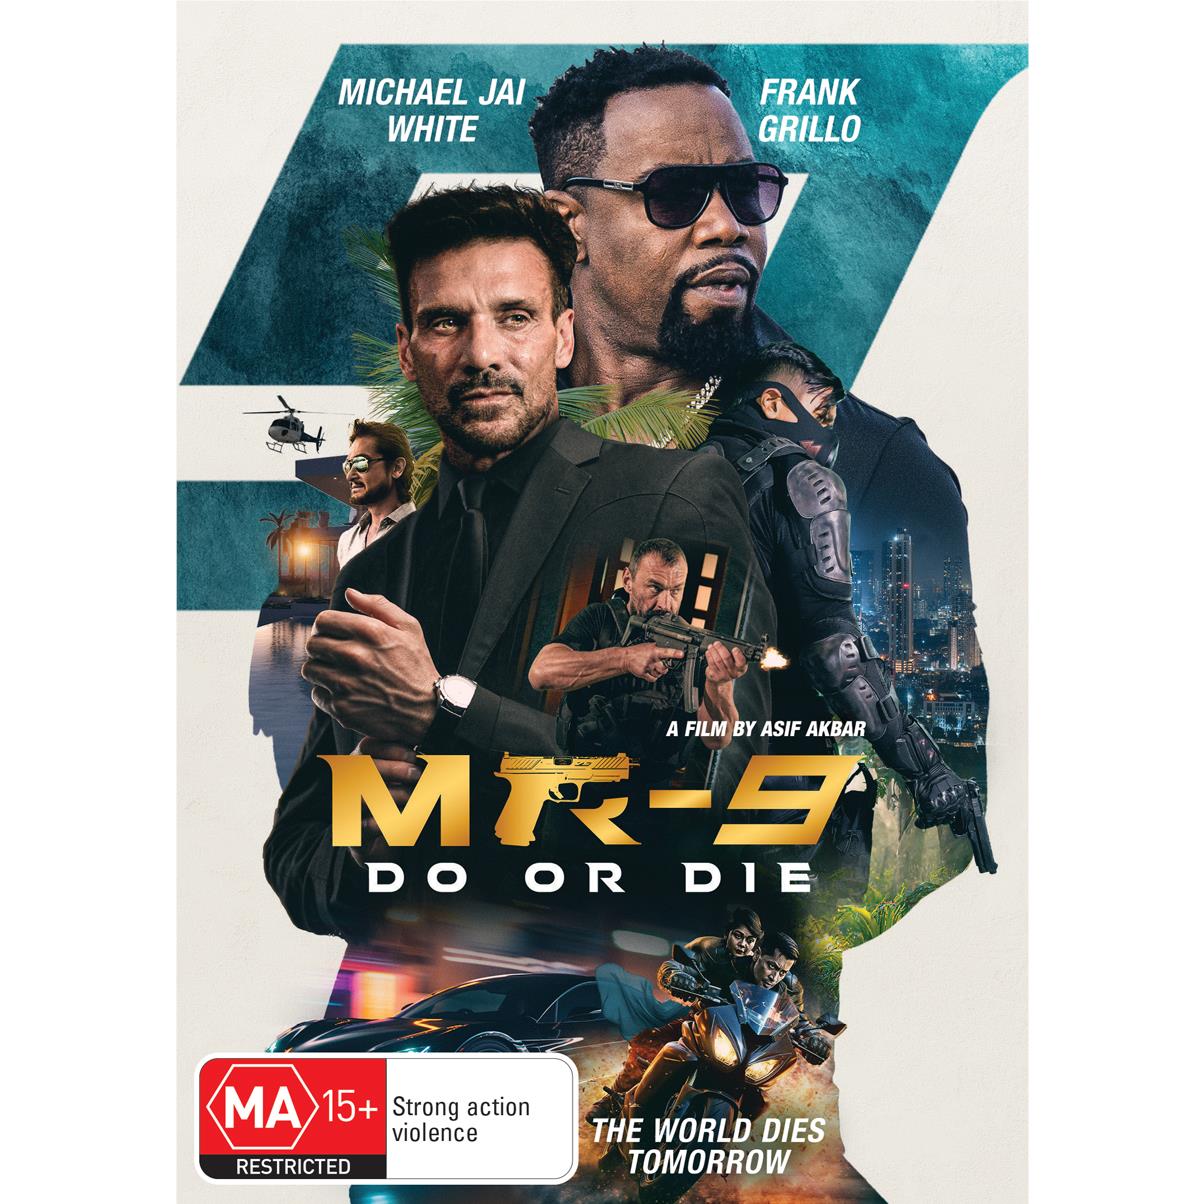 mr-9: do or die